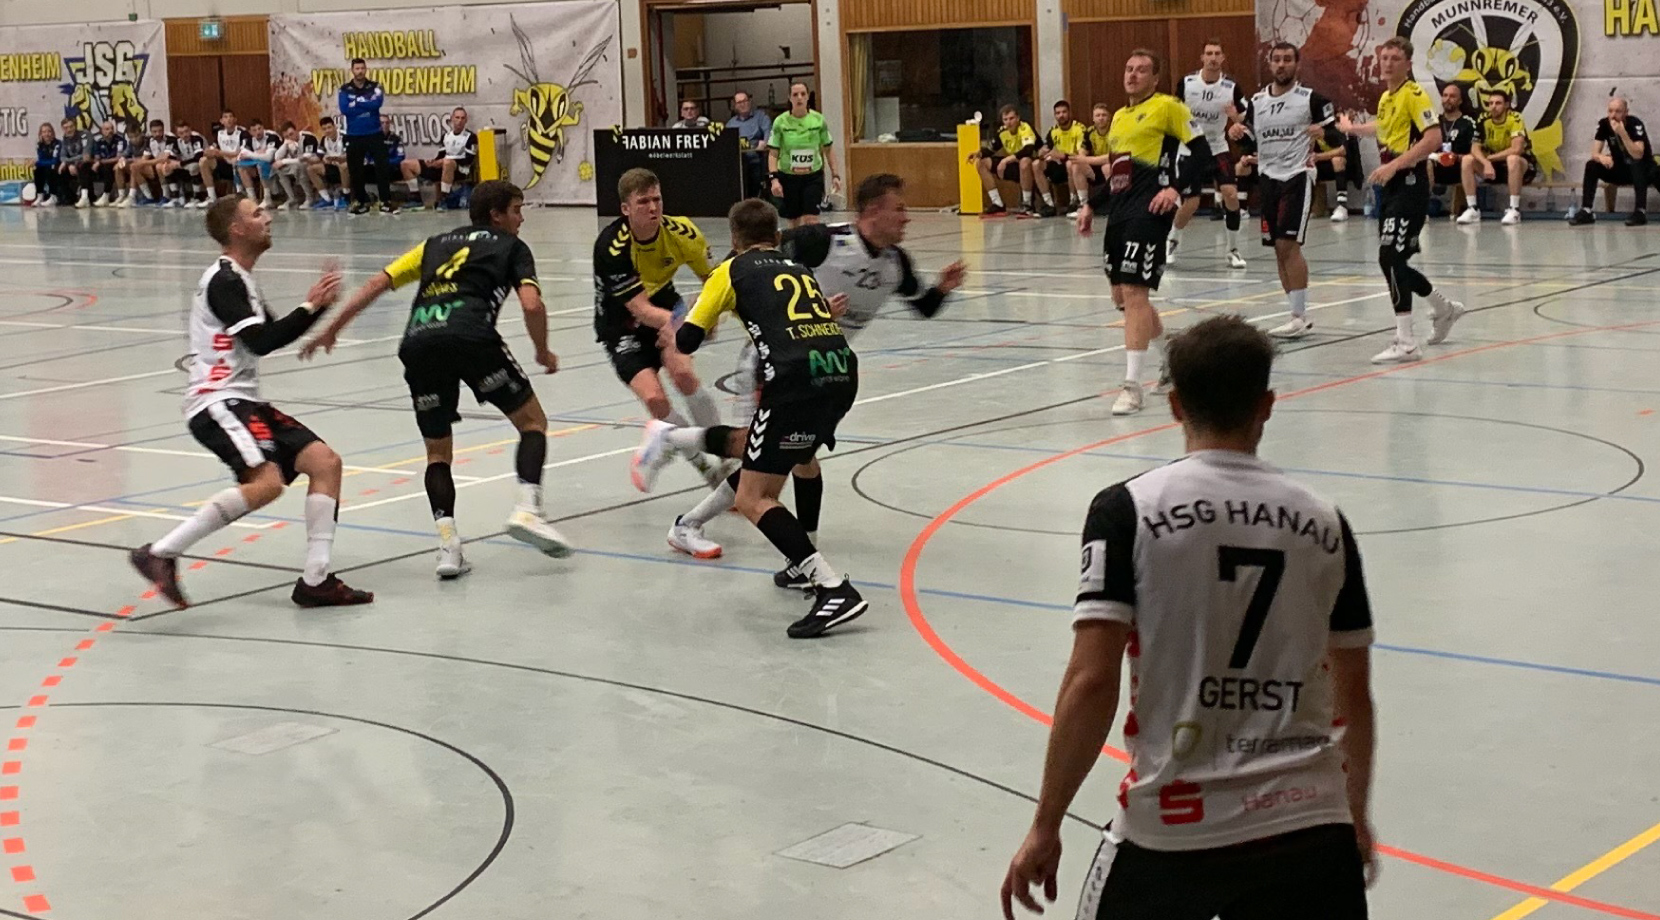 Auswärtssieg beim Aufsteiger: HSG Hanau entführt zwei Punkte aus Mundenheim